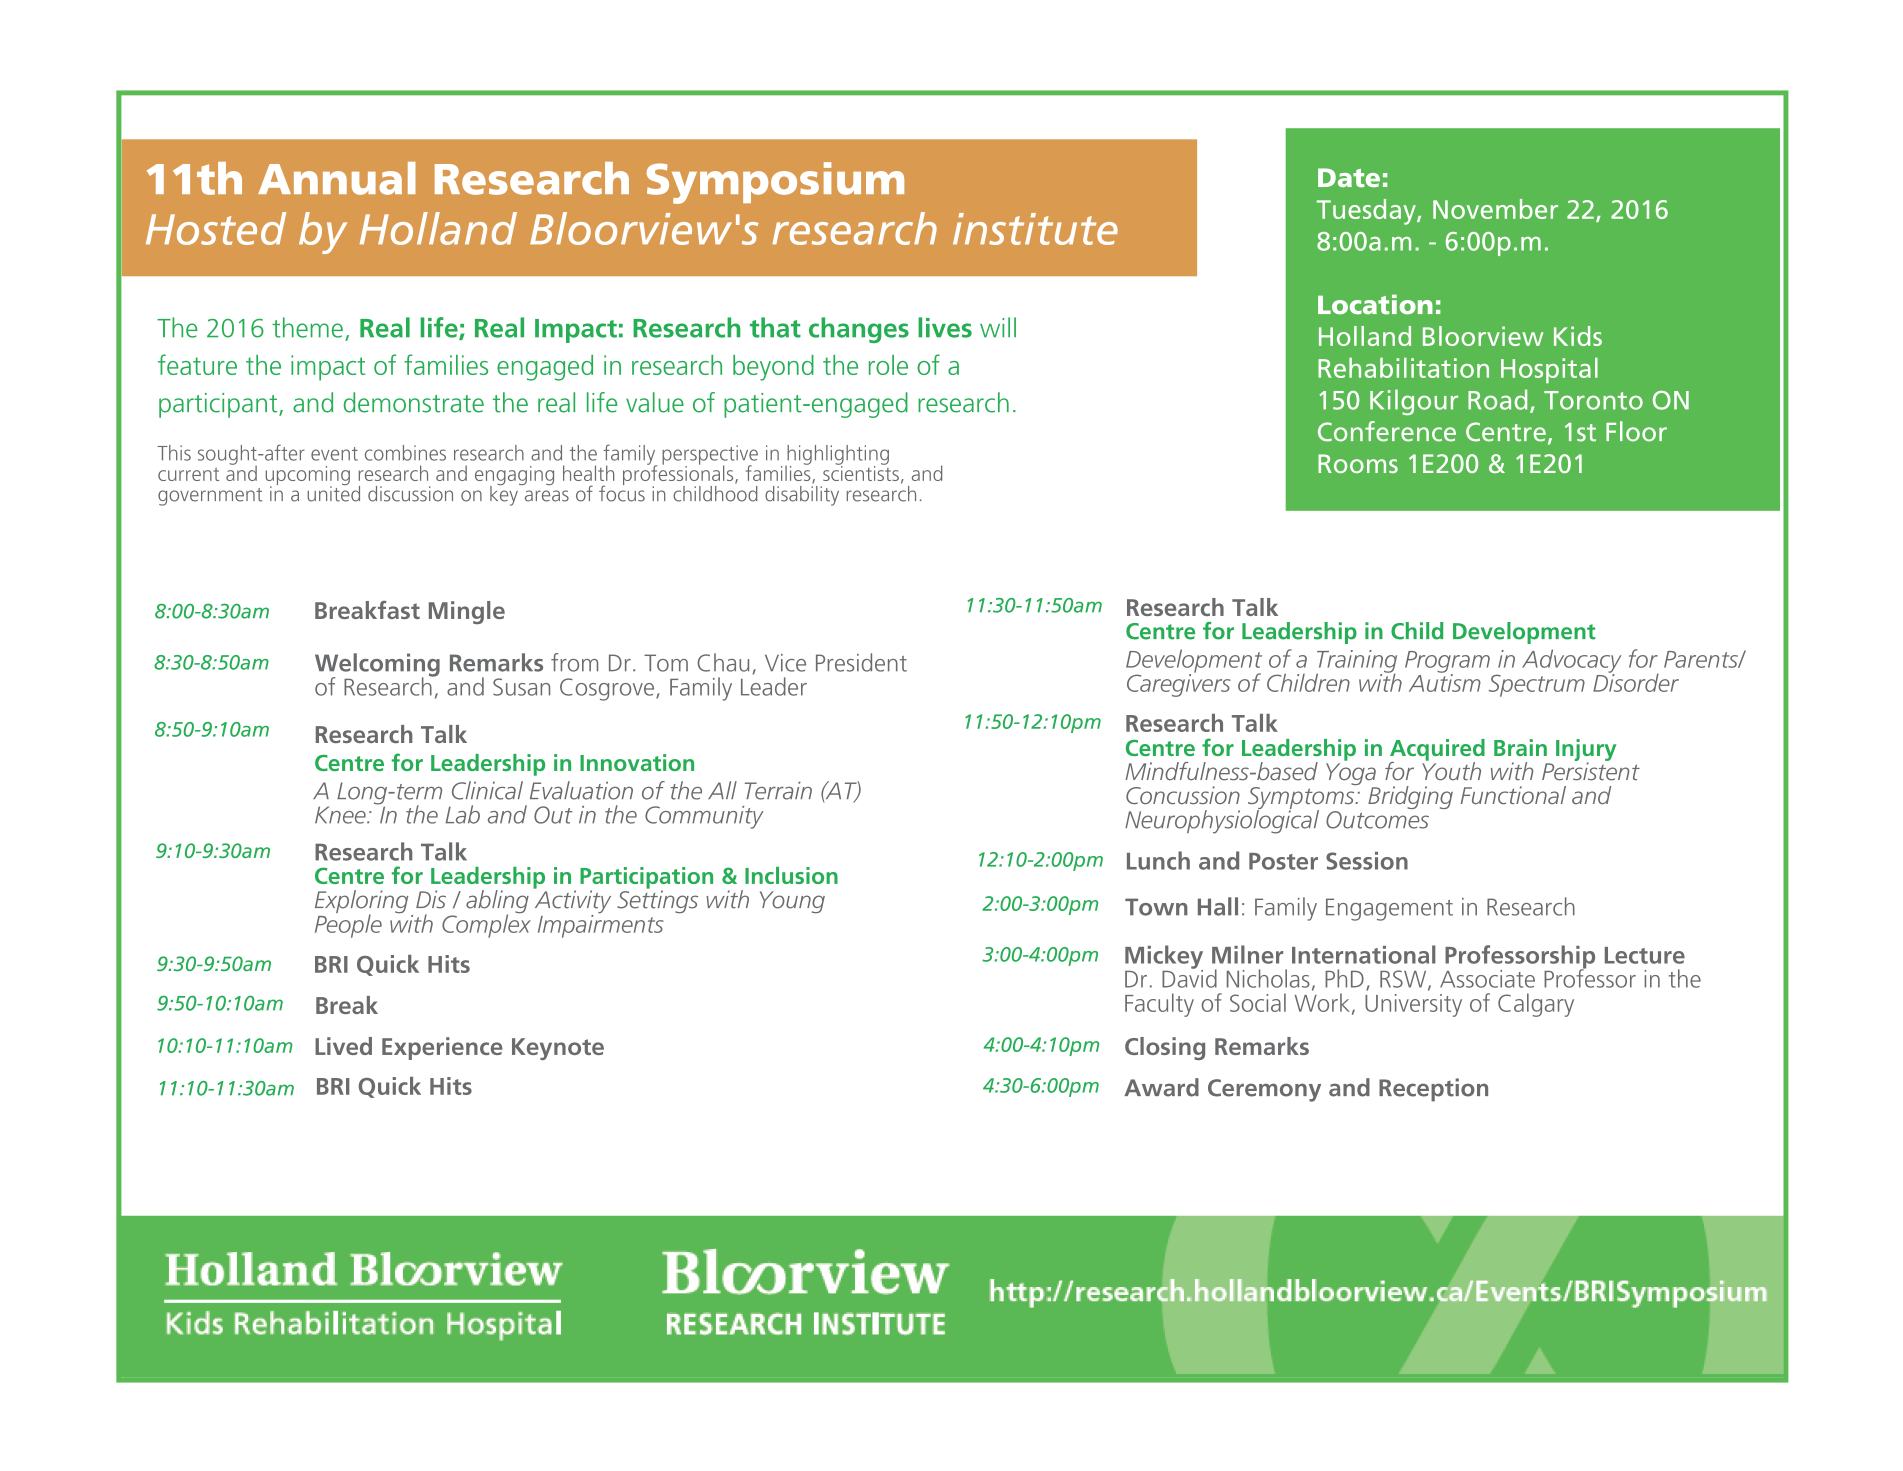 Symposium agenda PDF